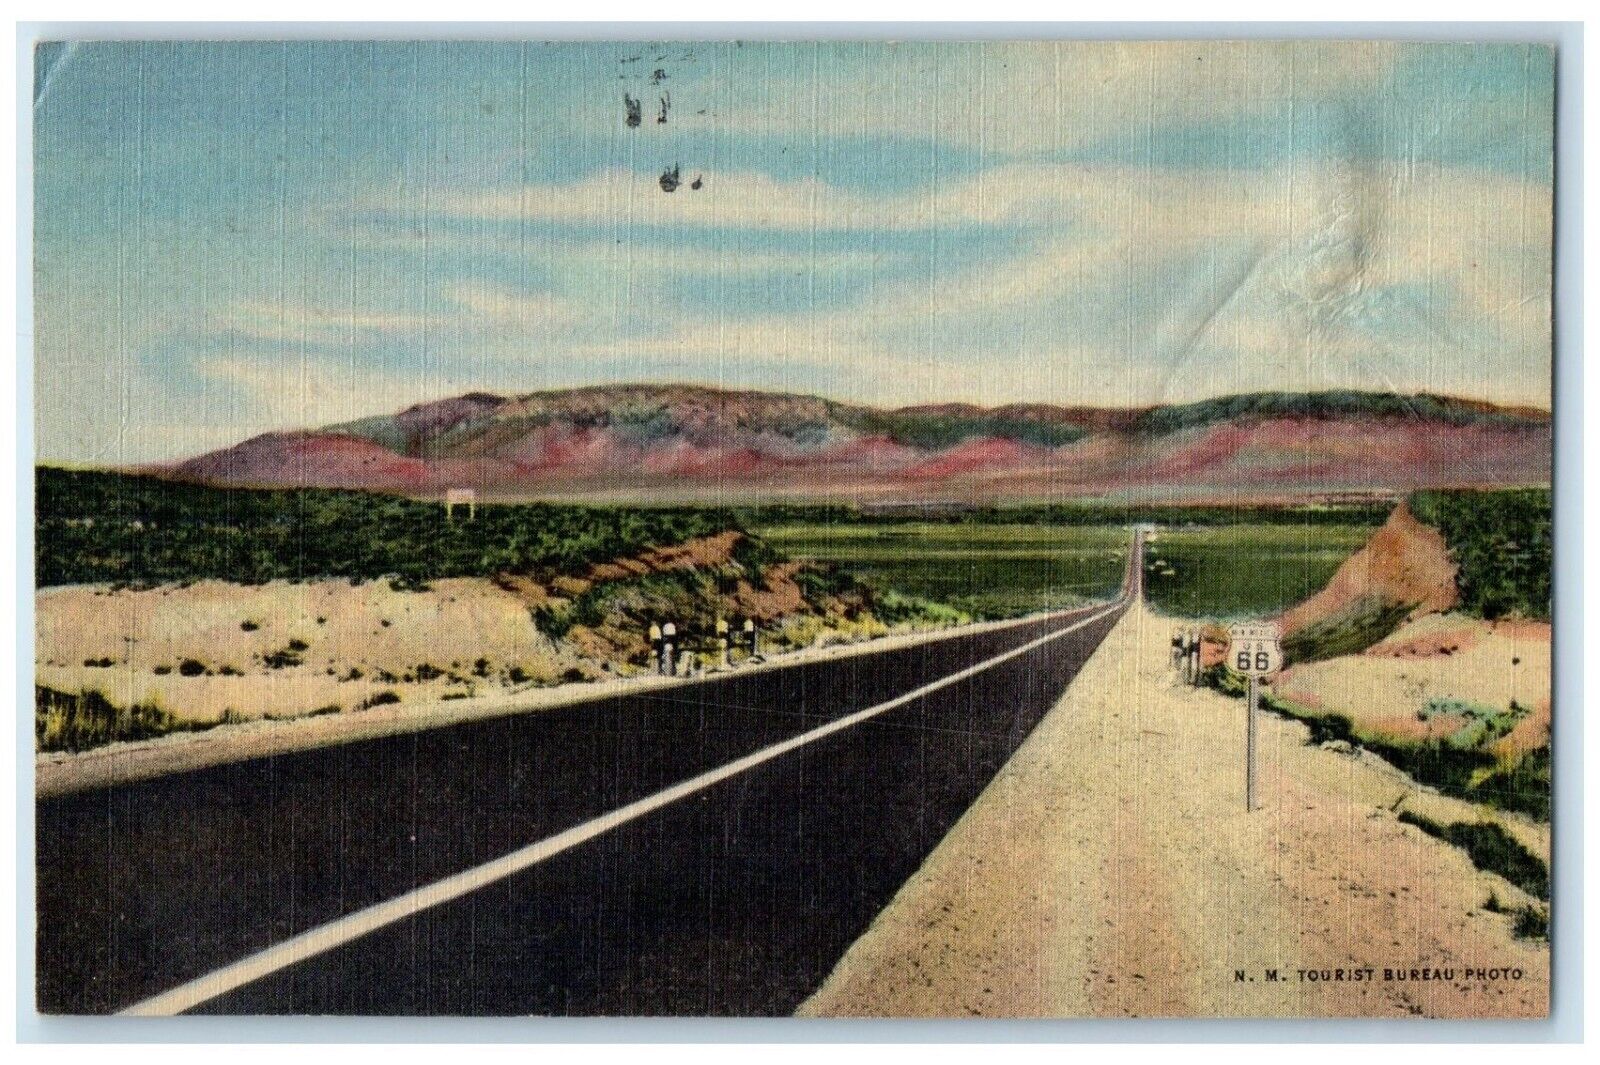 1951 Highway US Entering Rio Grande Valley Road Albuquerque New Mexico Postcard